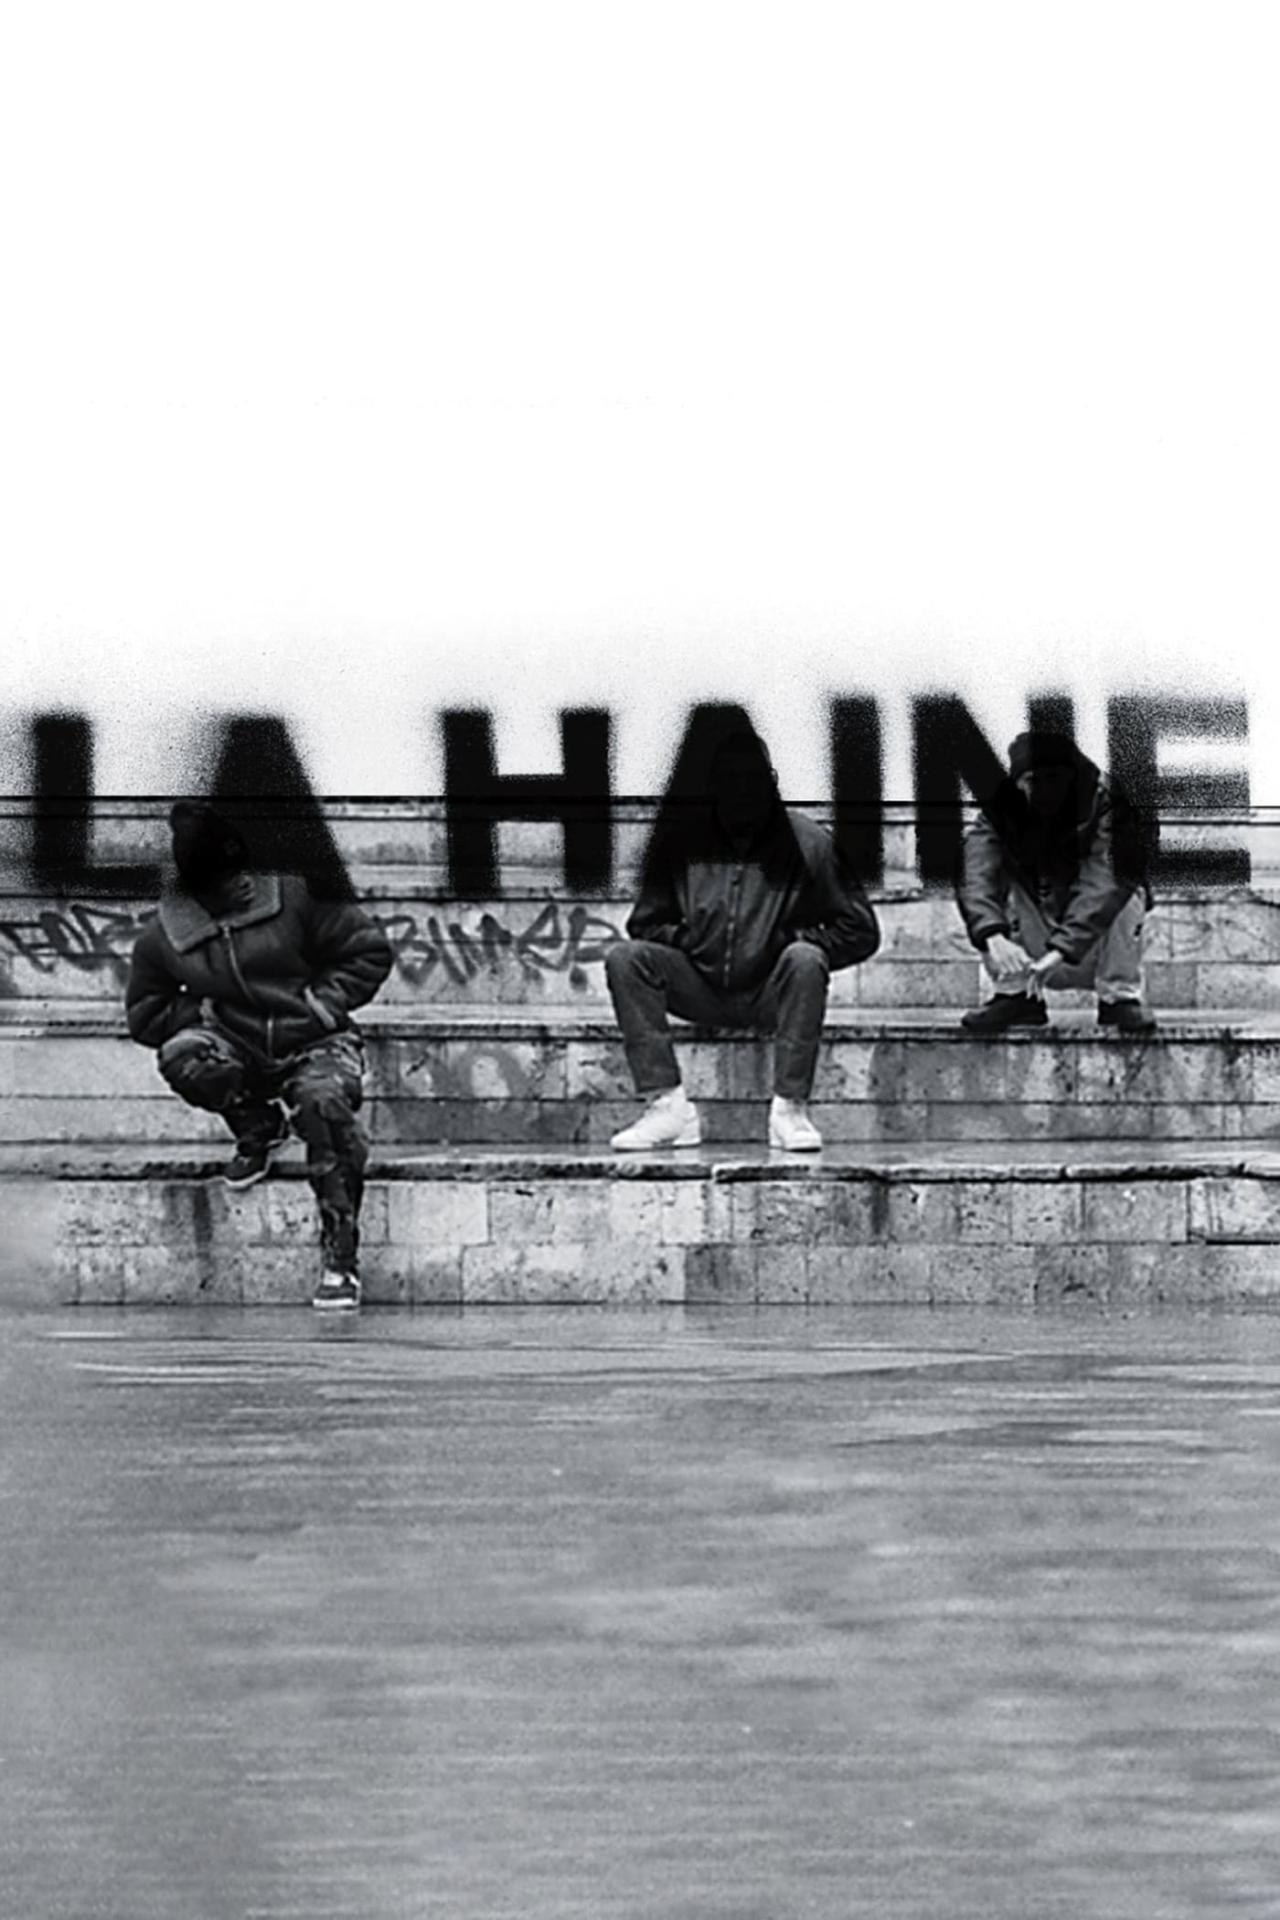 Affiche du film La Haine